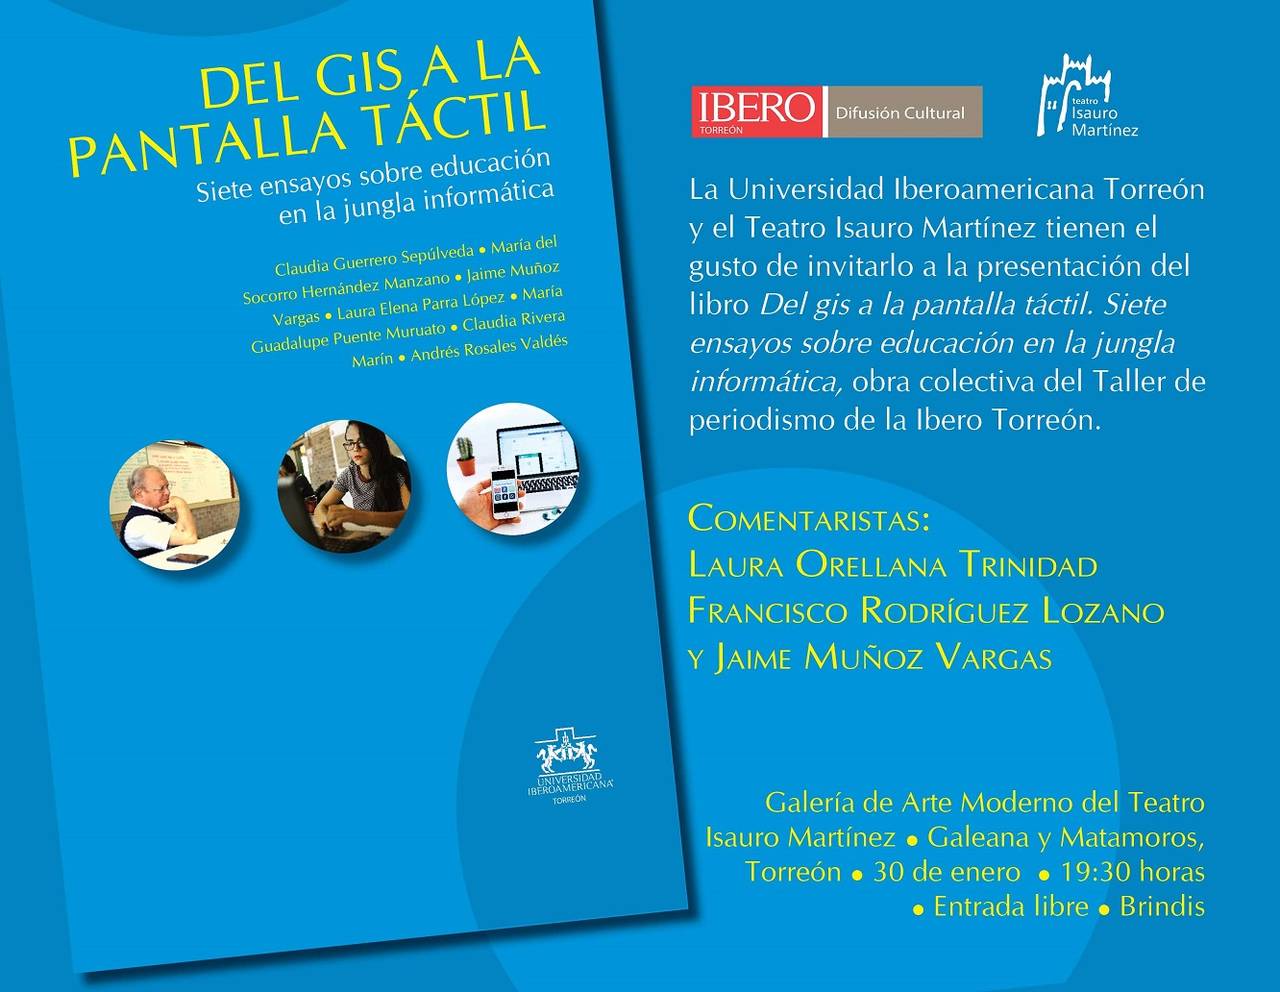 Evento. Presentación del libro 'Del gis a la pantalla táctil' Publicado por la Universidad Iberoamericana Torreón.